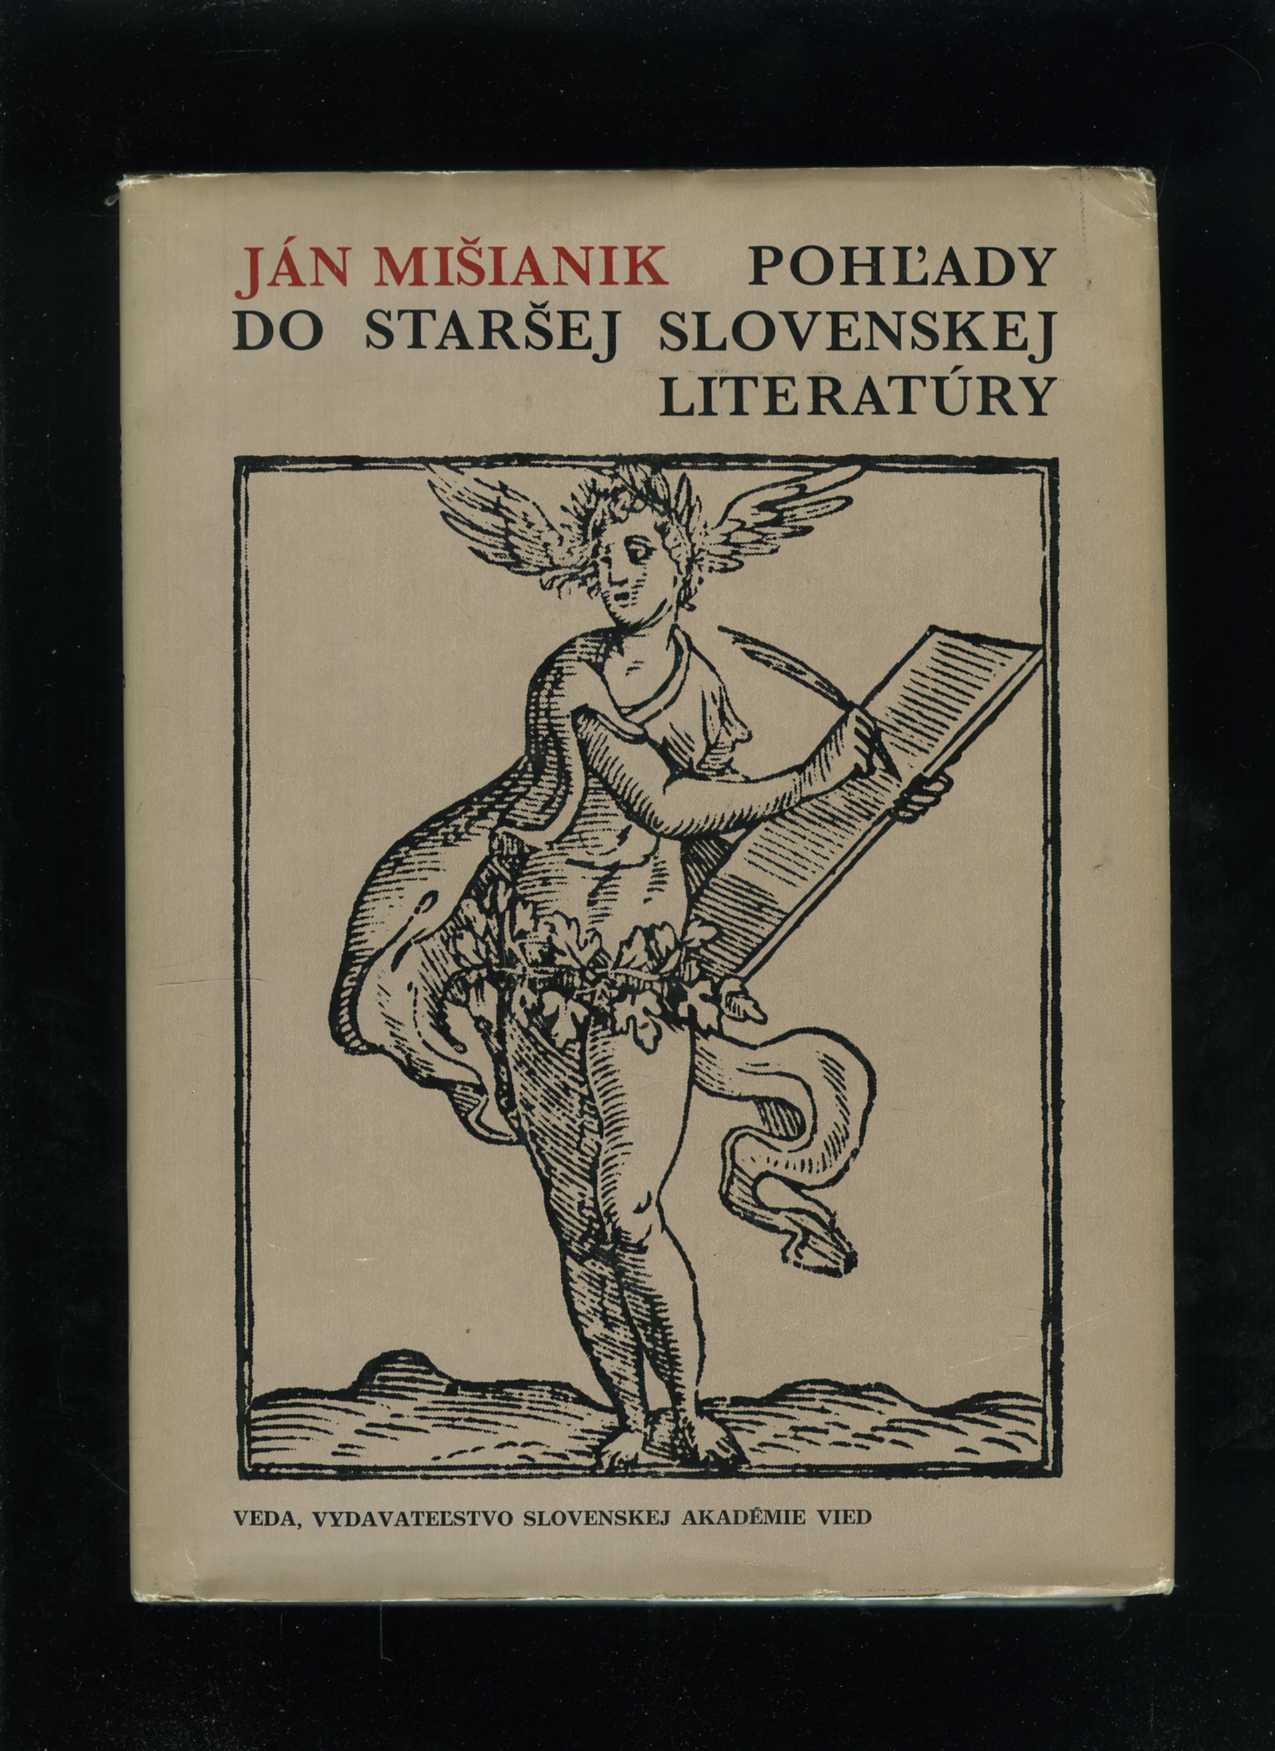 Pohľady do staršej slovenskej literatúry (Ján Mišianik)